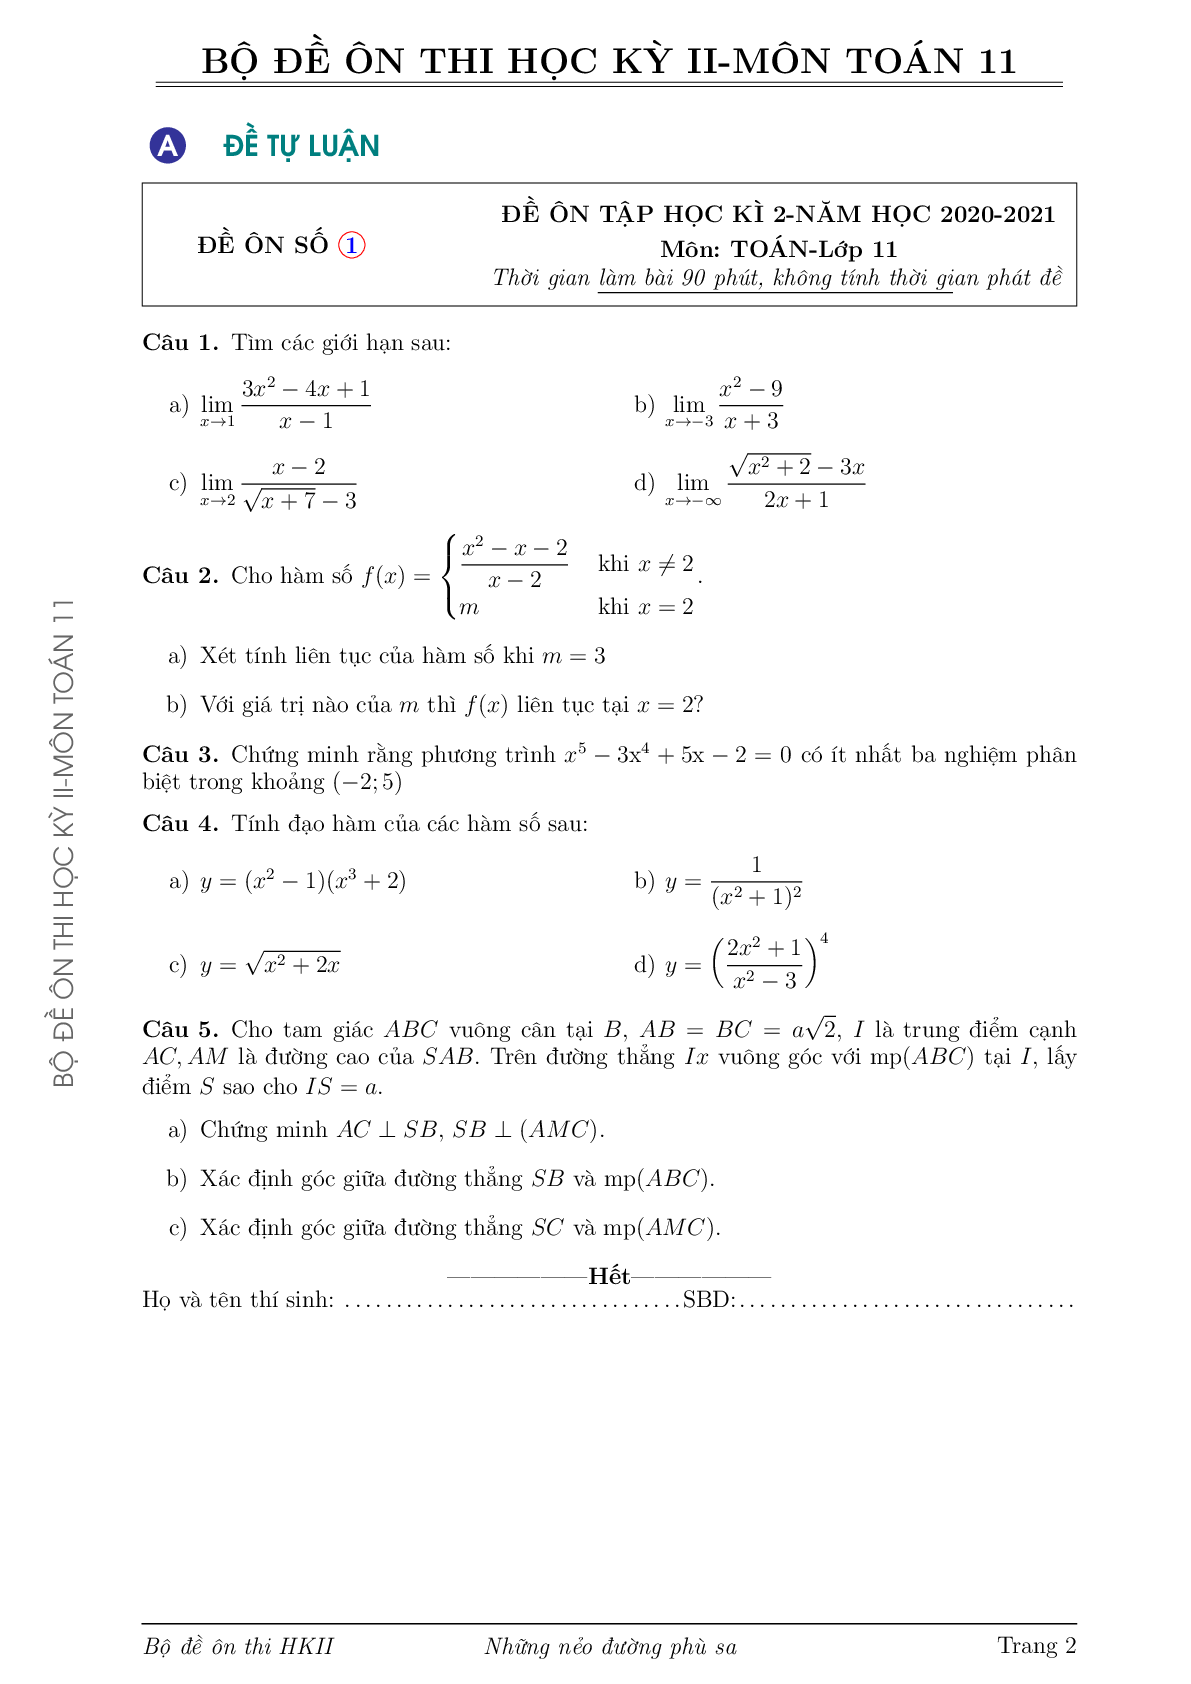 Bộ đề ôn thi học kỳ 2 môn Toán lớp 11 trường THCS-THPT Hoa Sen (trang 2)